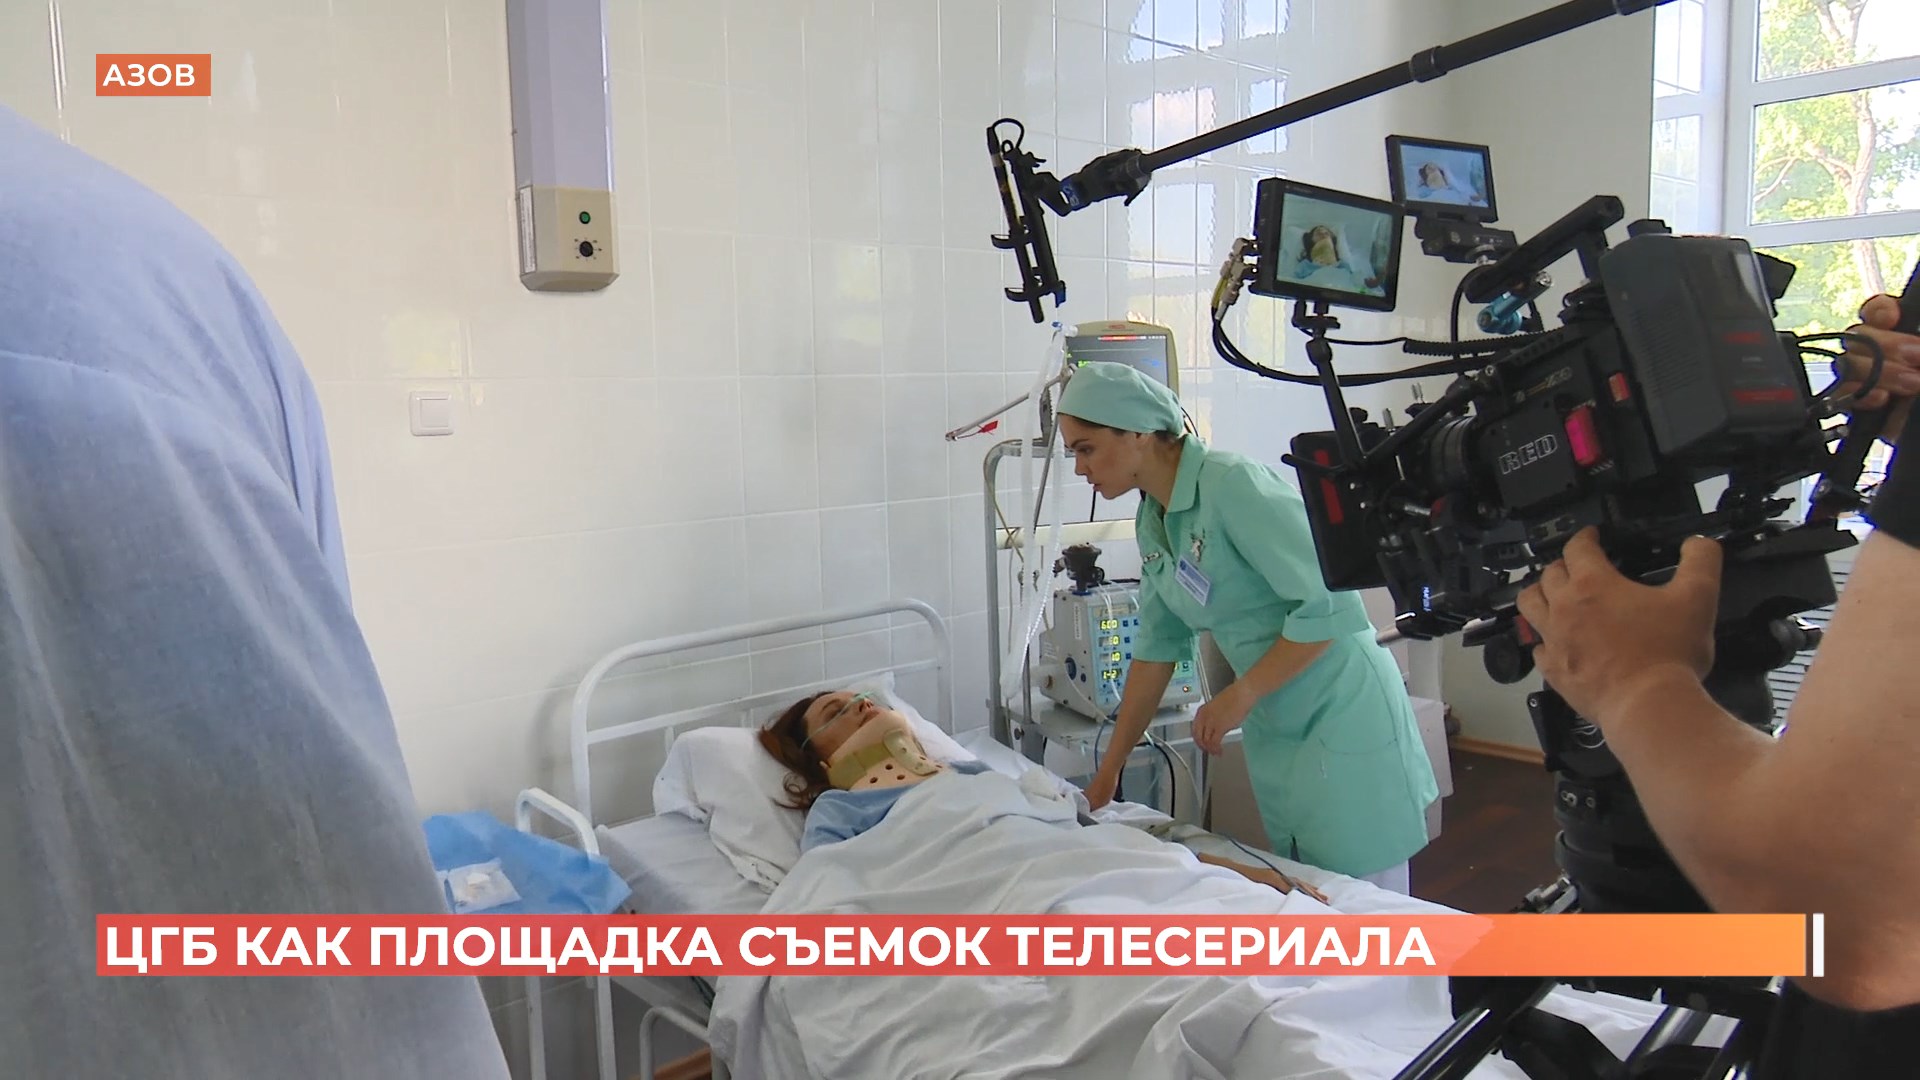 ЦГБ как площадка съёмок: в Азове снимают телесериал для федерального канала